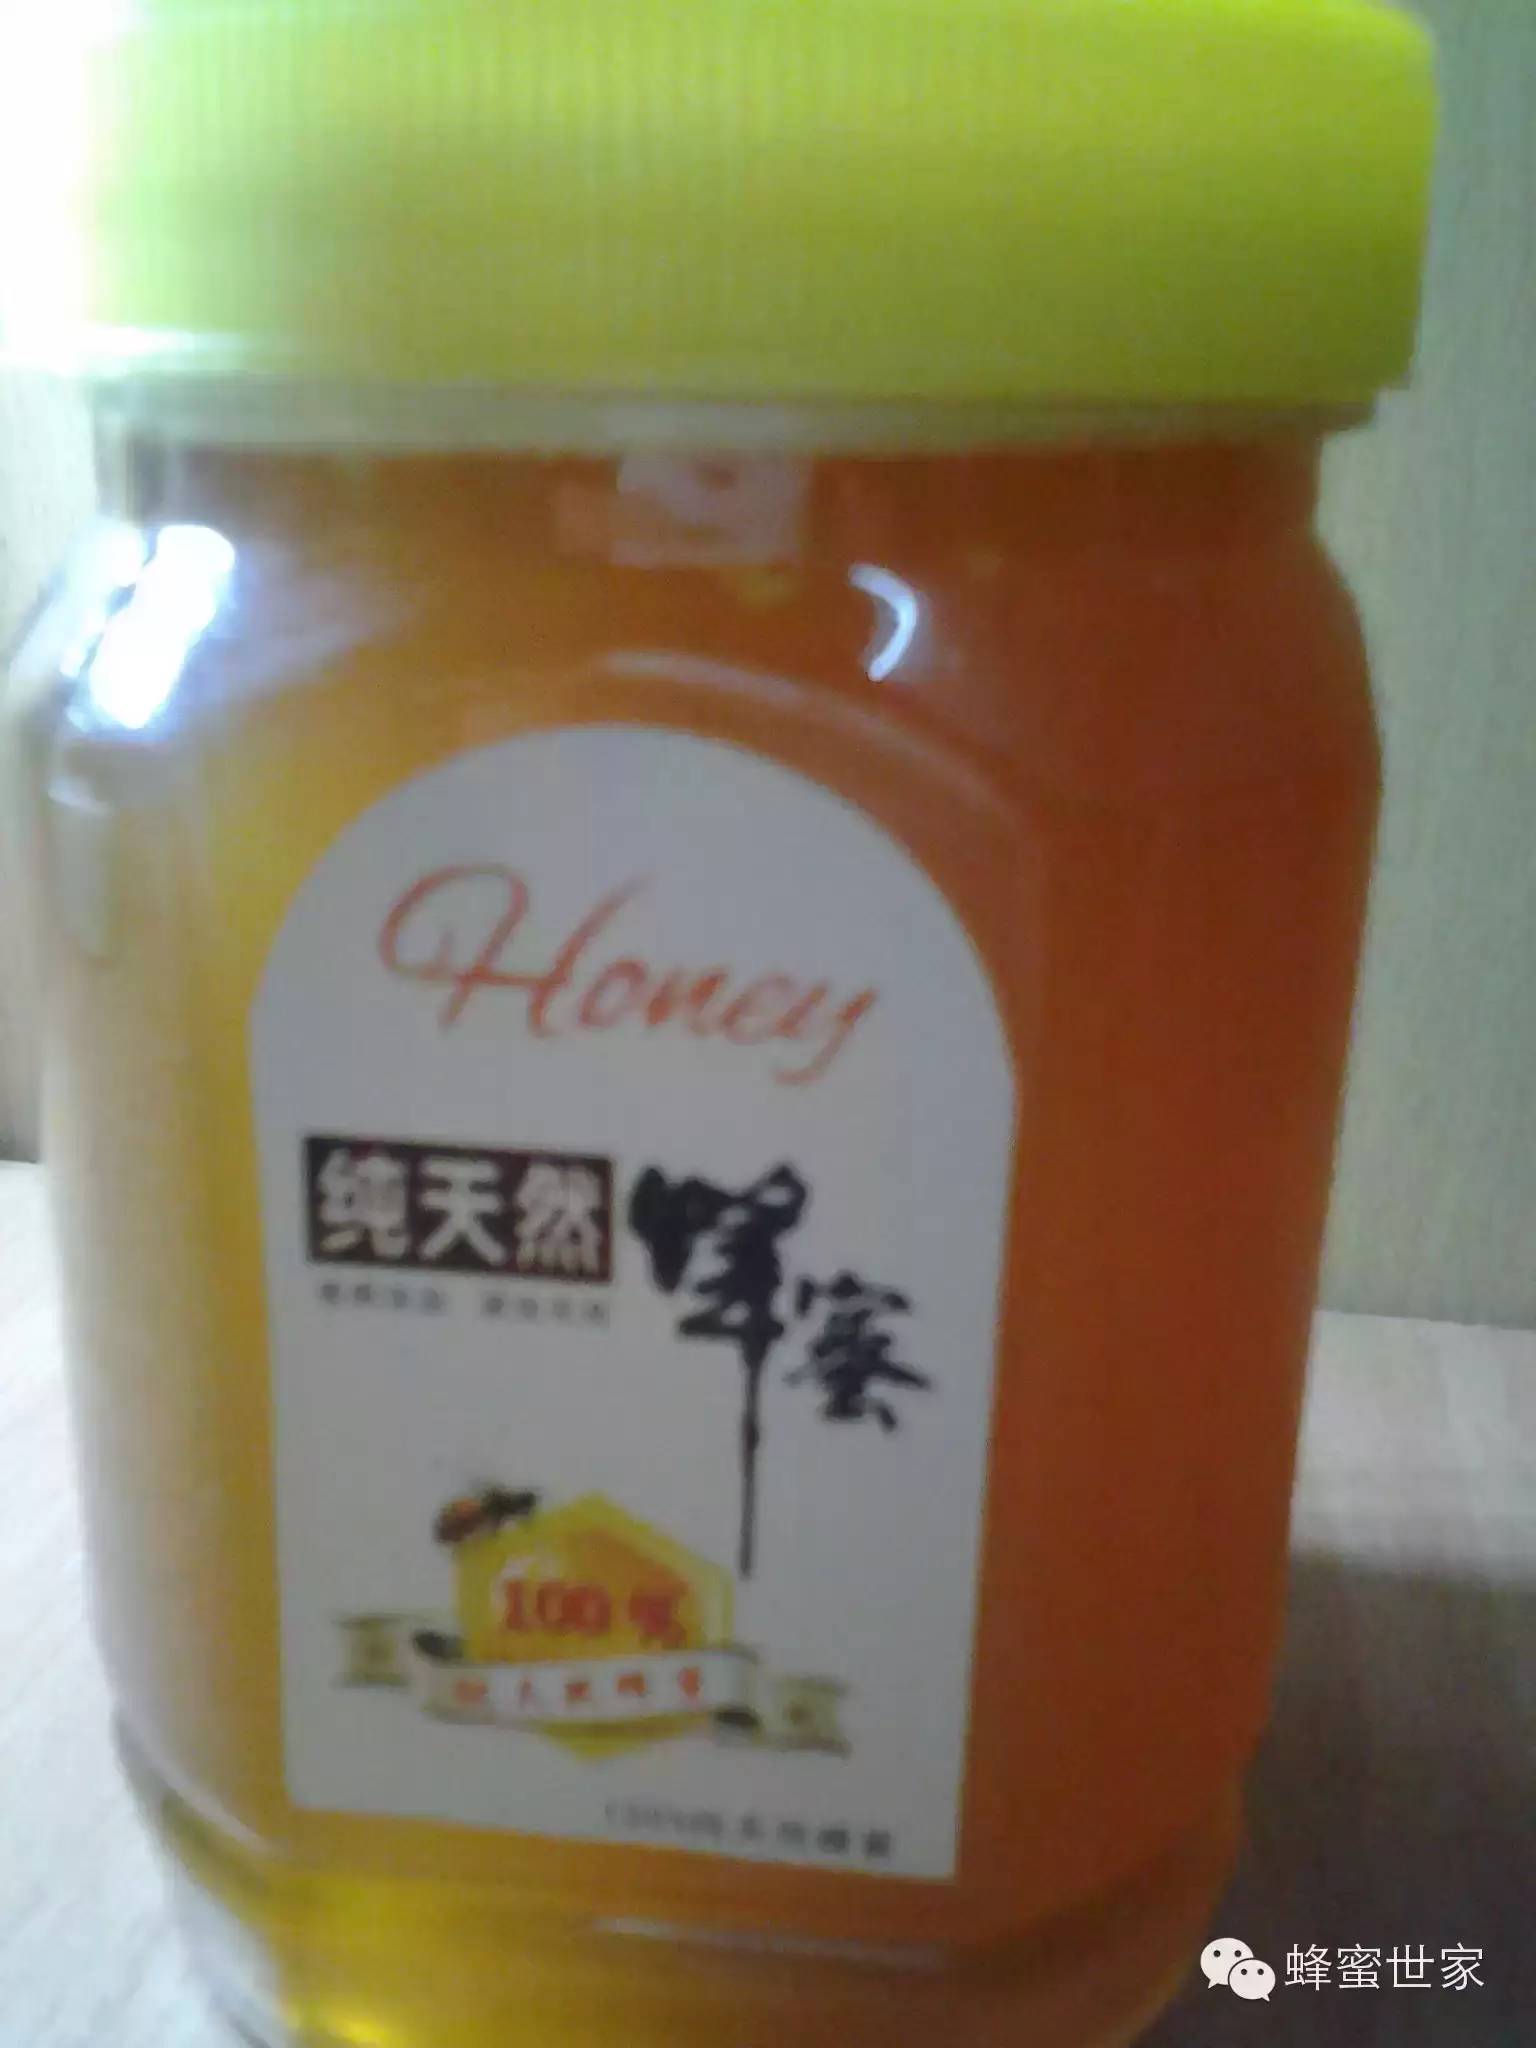 蜂蜜面膜 蜂蜜核桃 蜂蜜醋水减肥法的危害 蜂蜜厂家 蜂蜜润唇膏